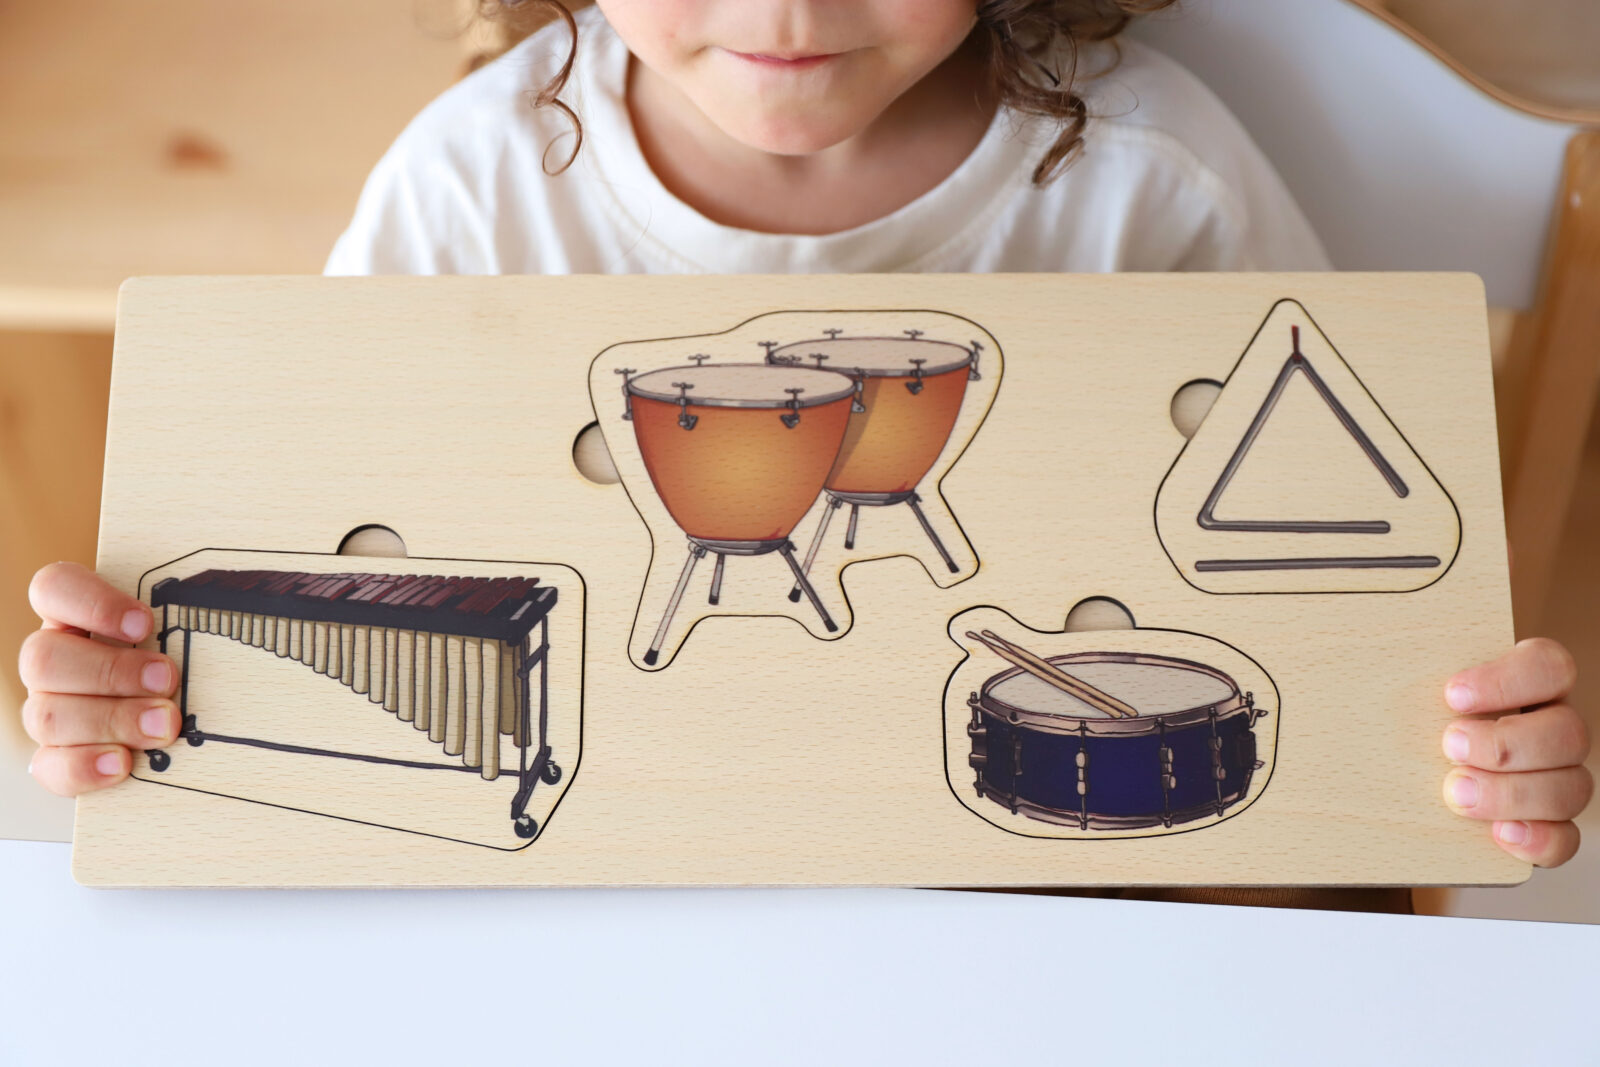 Imágenes de Instrumentos Musicales Infantiles - Descarga gratuita